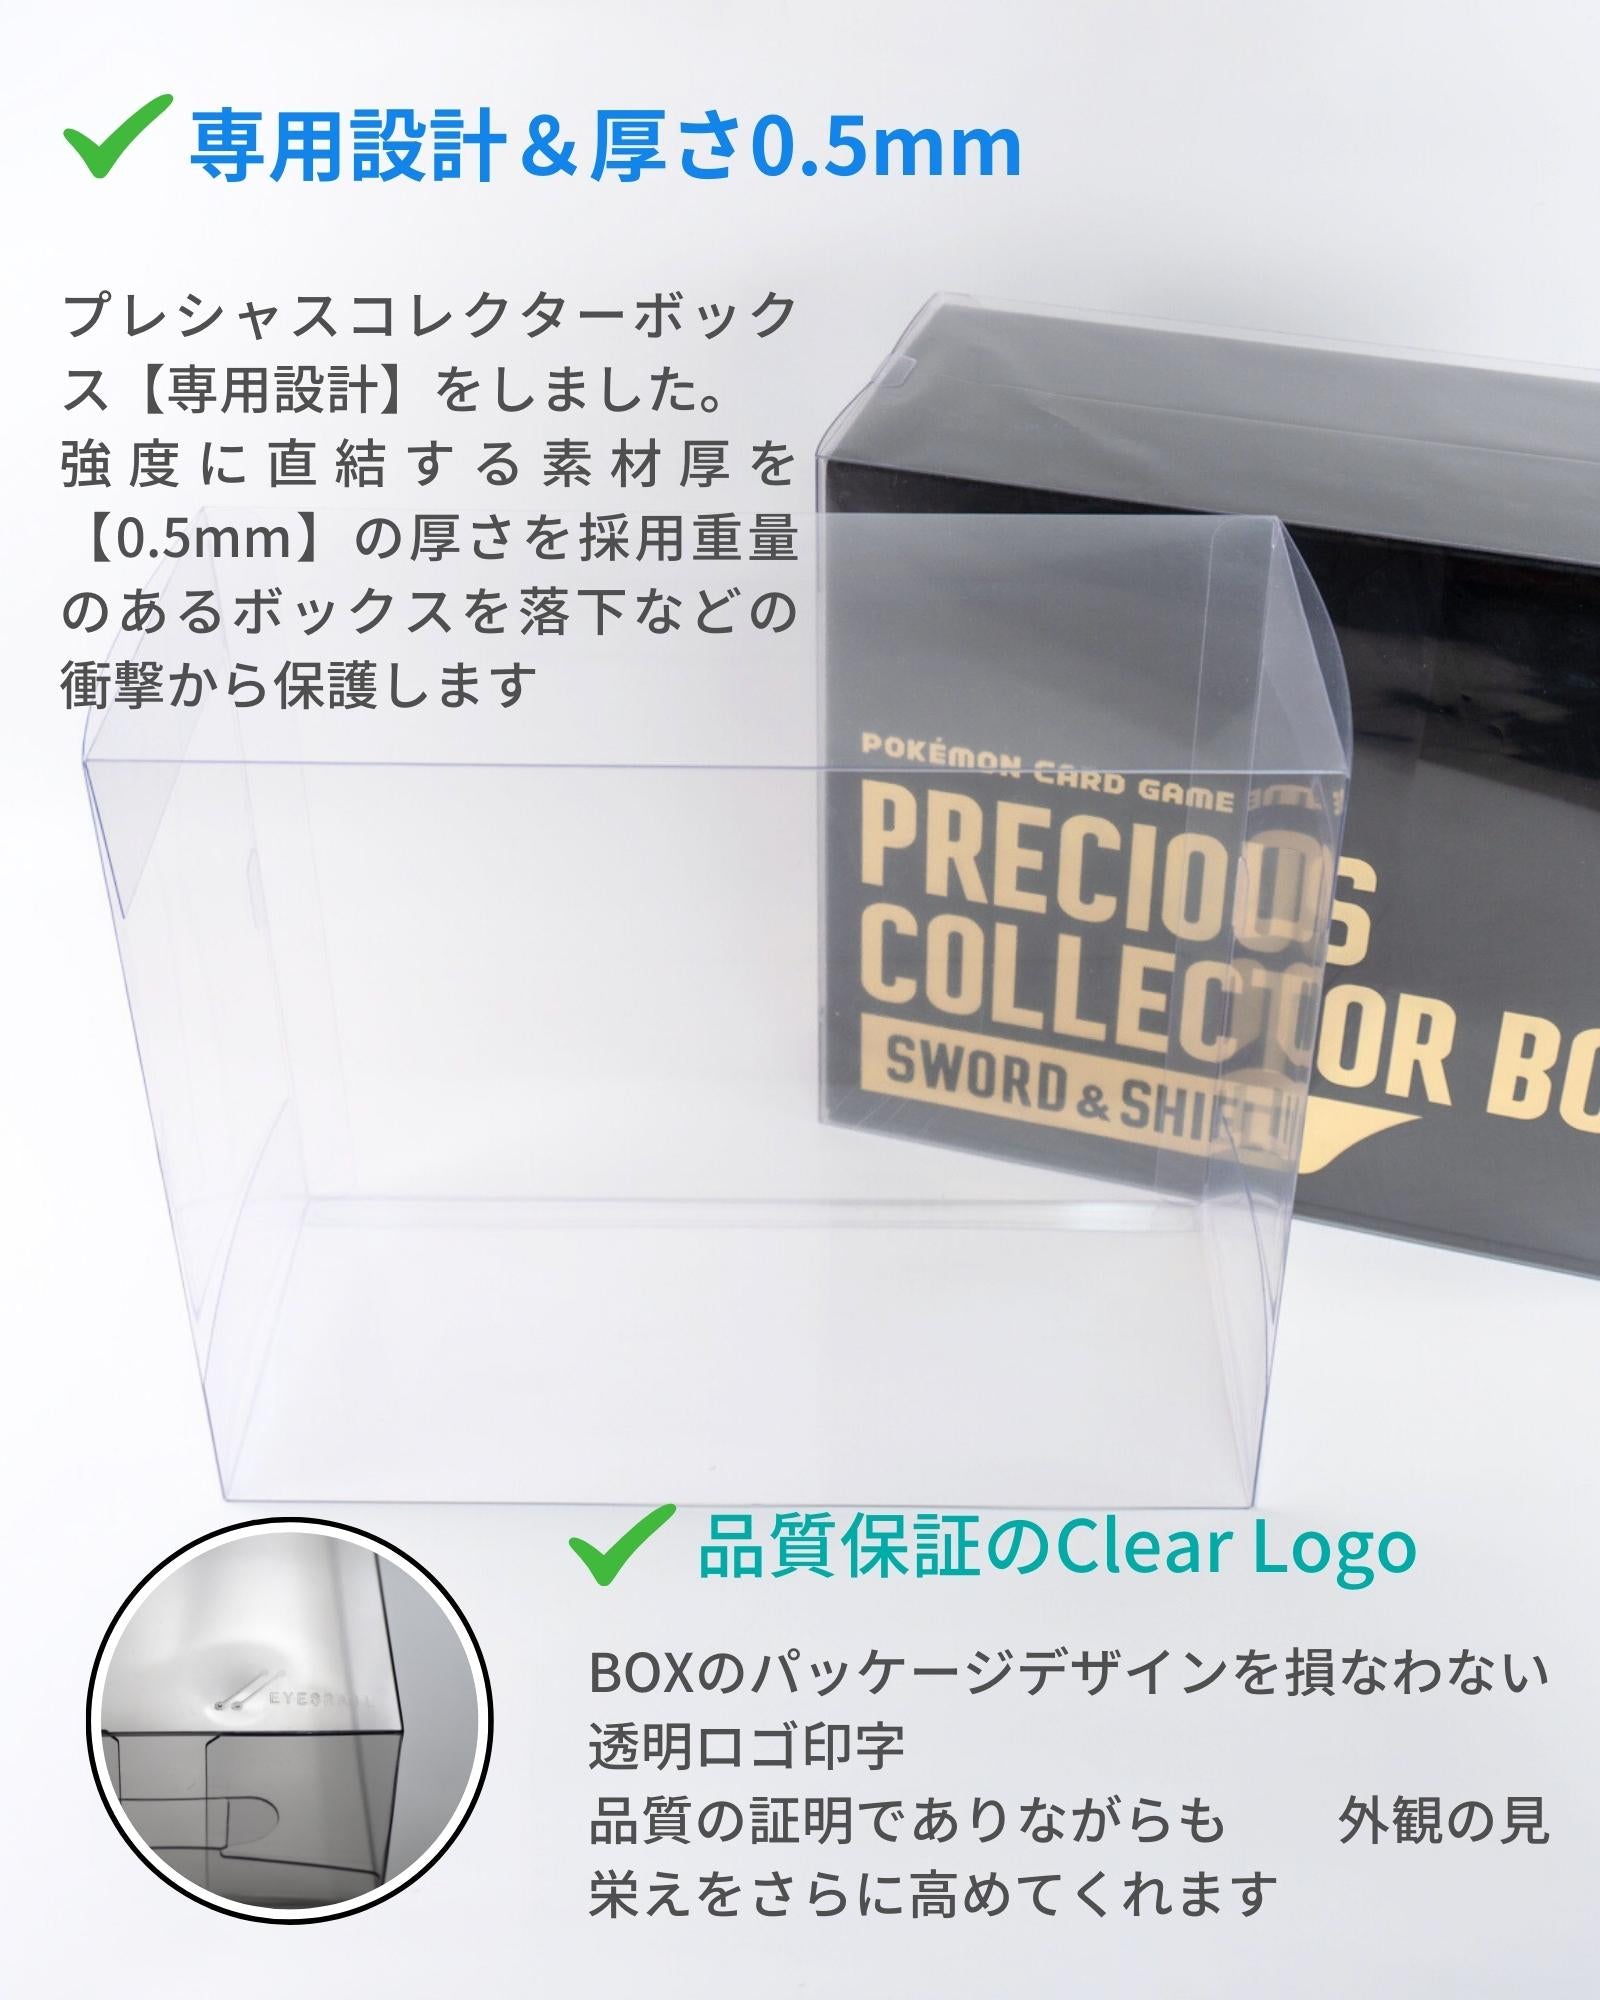 [S12a] POKÉMON CARD GAME Sword & Shield ｢PRECIOUS COLLECTOR BOX｣